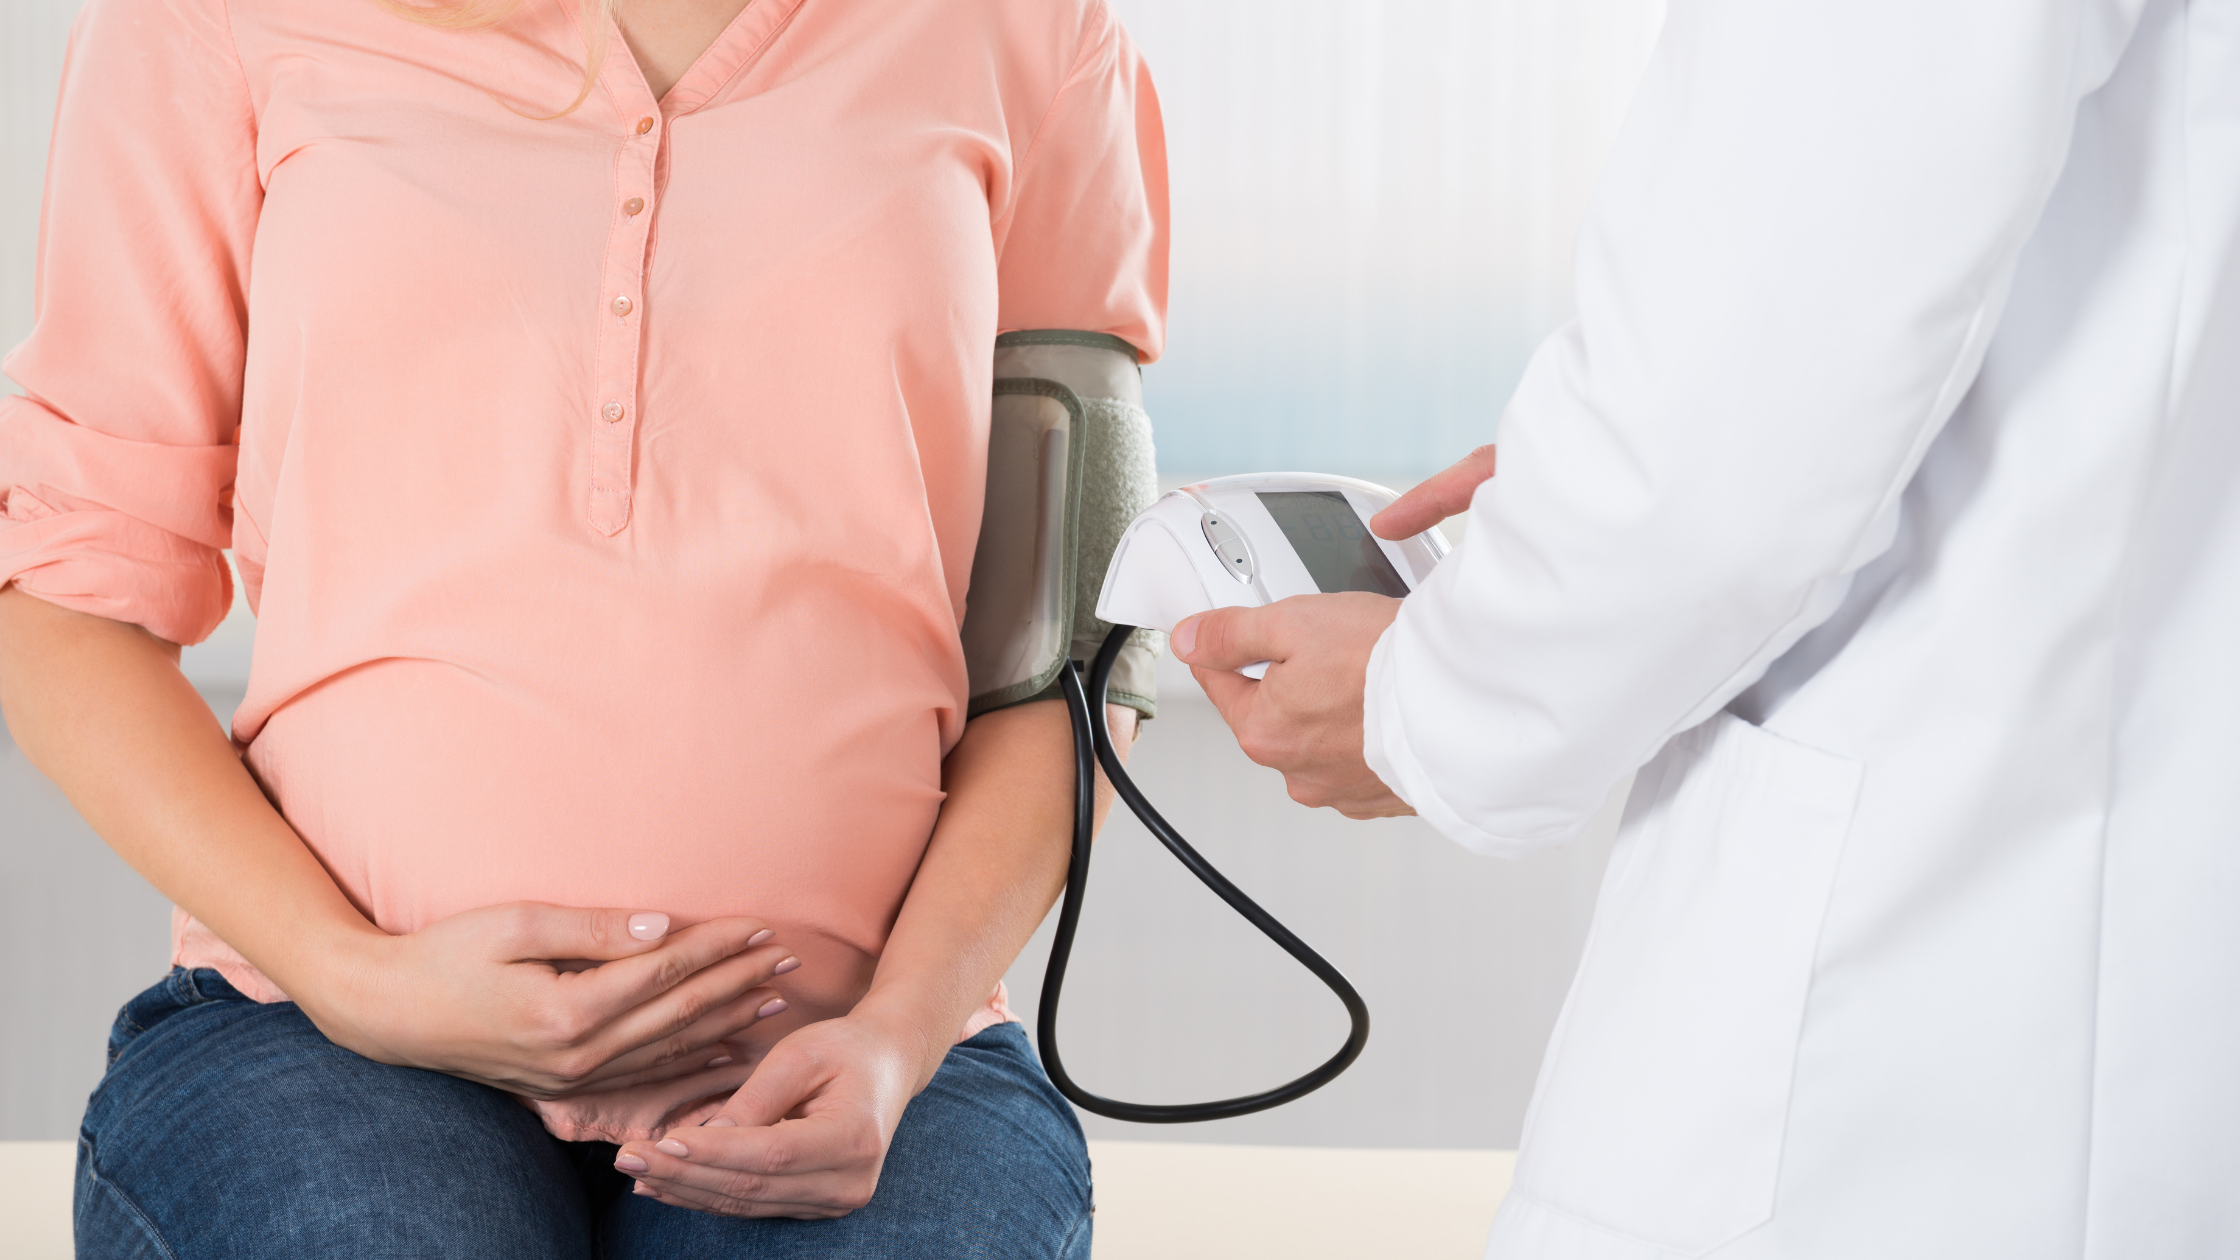 pregnant women Pre-Eclampsia – Symptoms, Risk